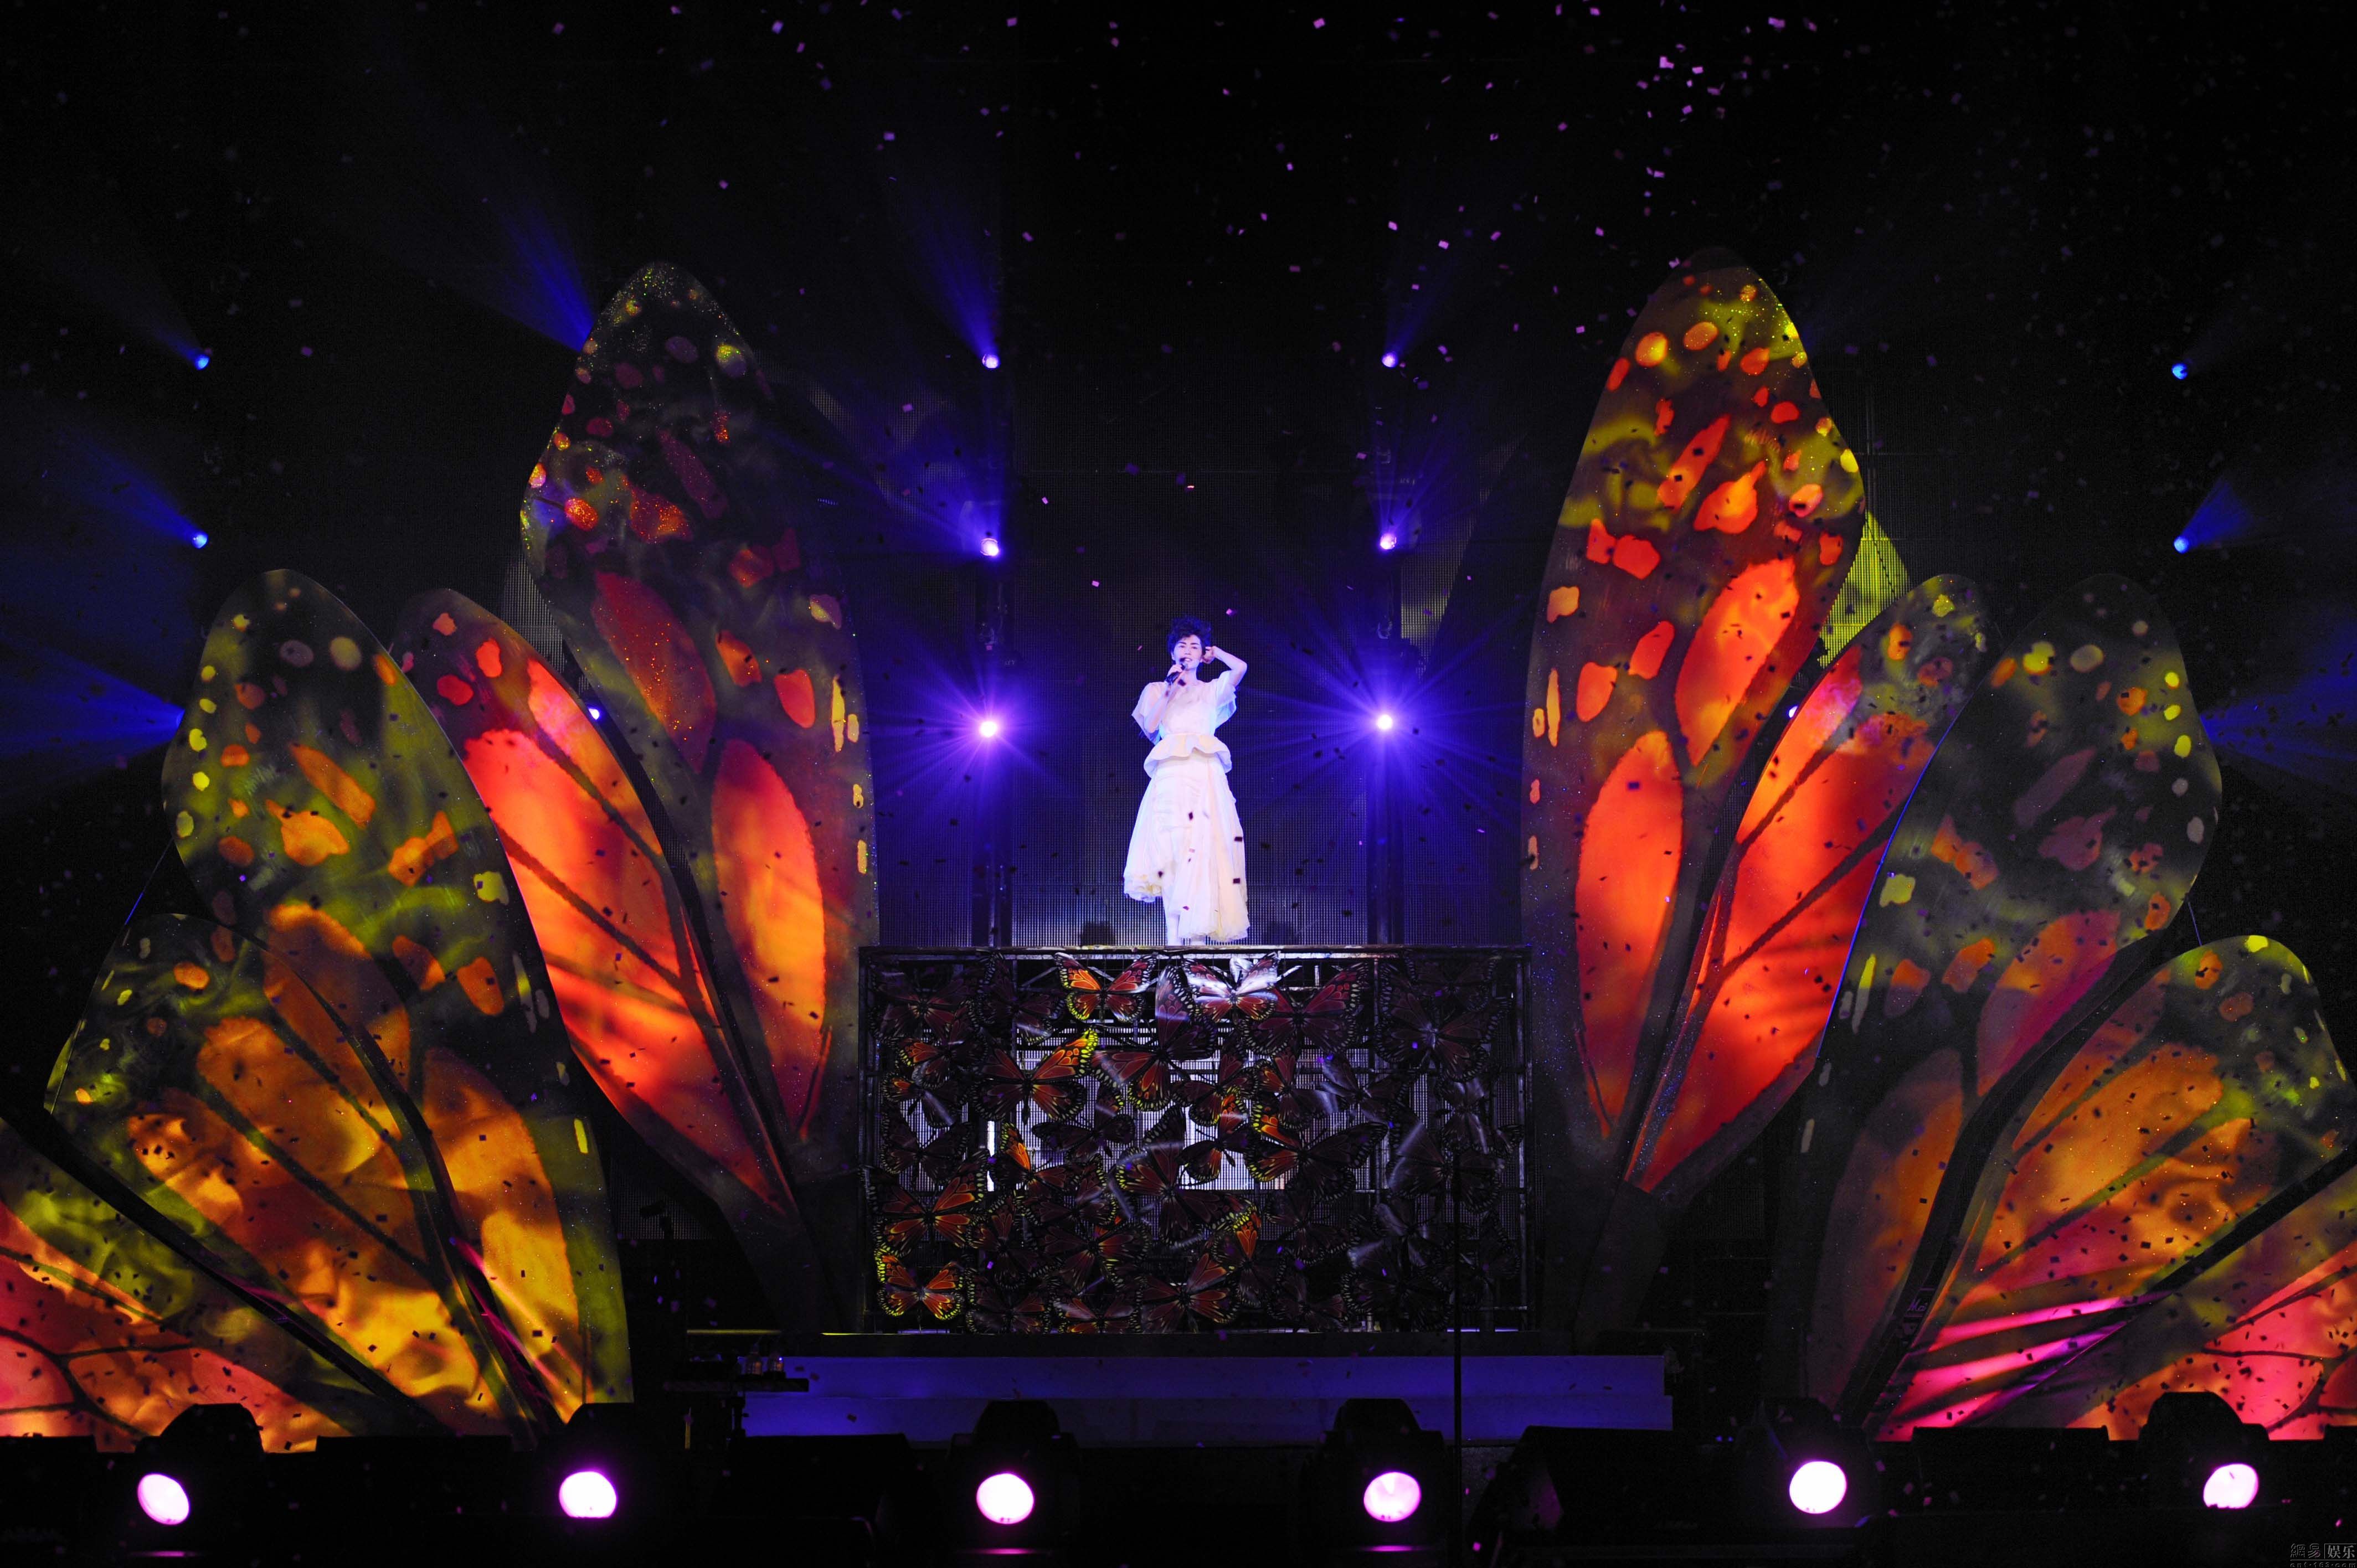 图片展示一位穿白色服装的人站在舞台中央，背后是巨大的彩色蝴蝶翅膀装置，灯光照耀下，气氛梦幻。